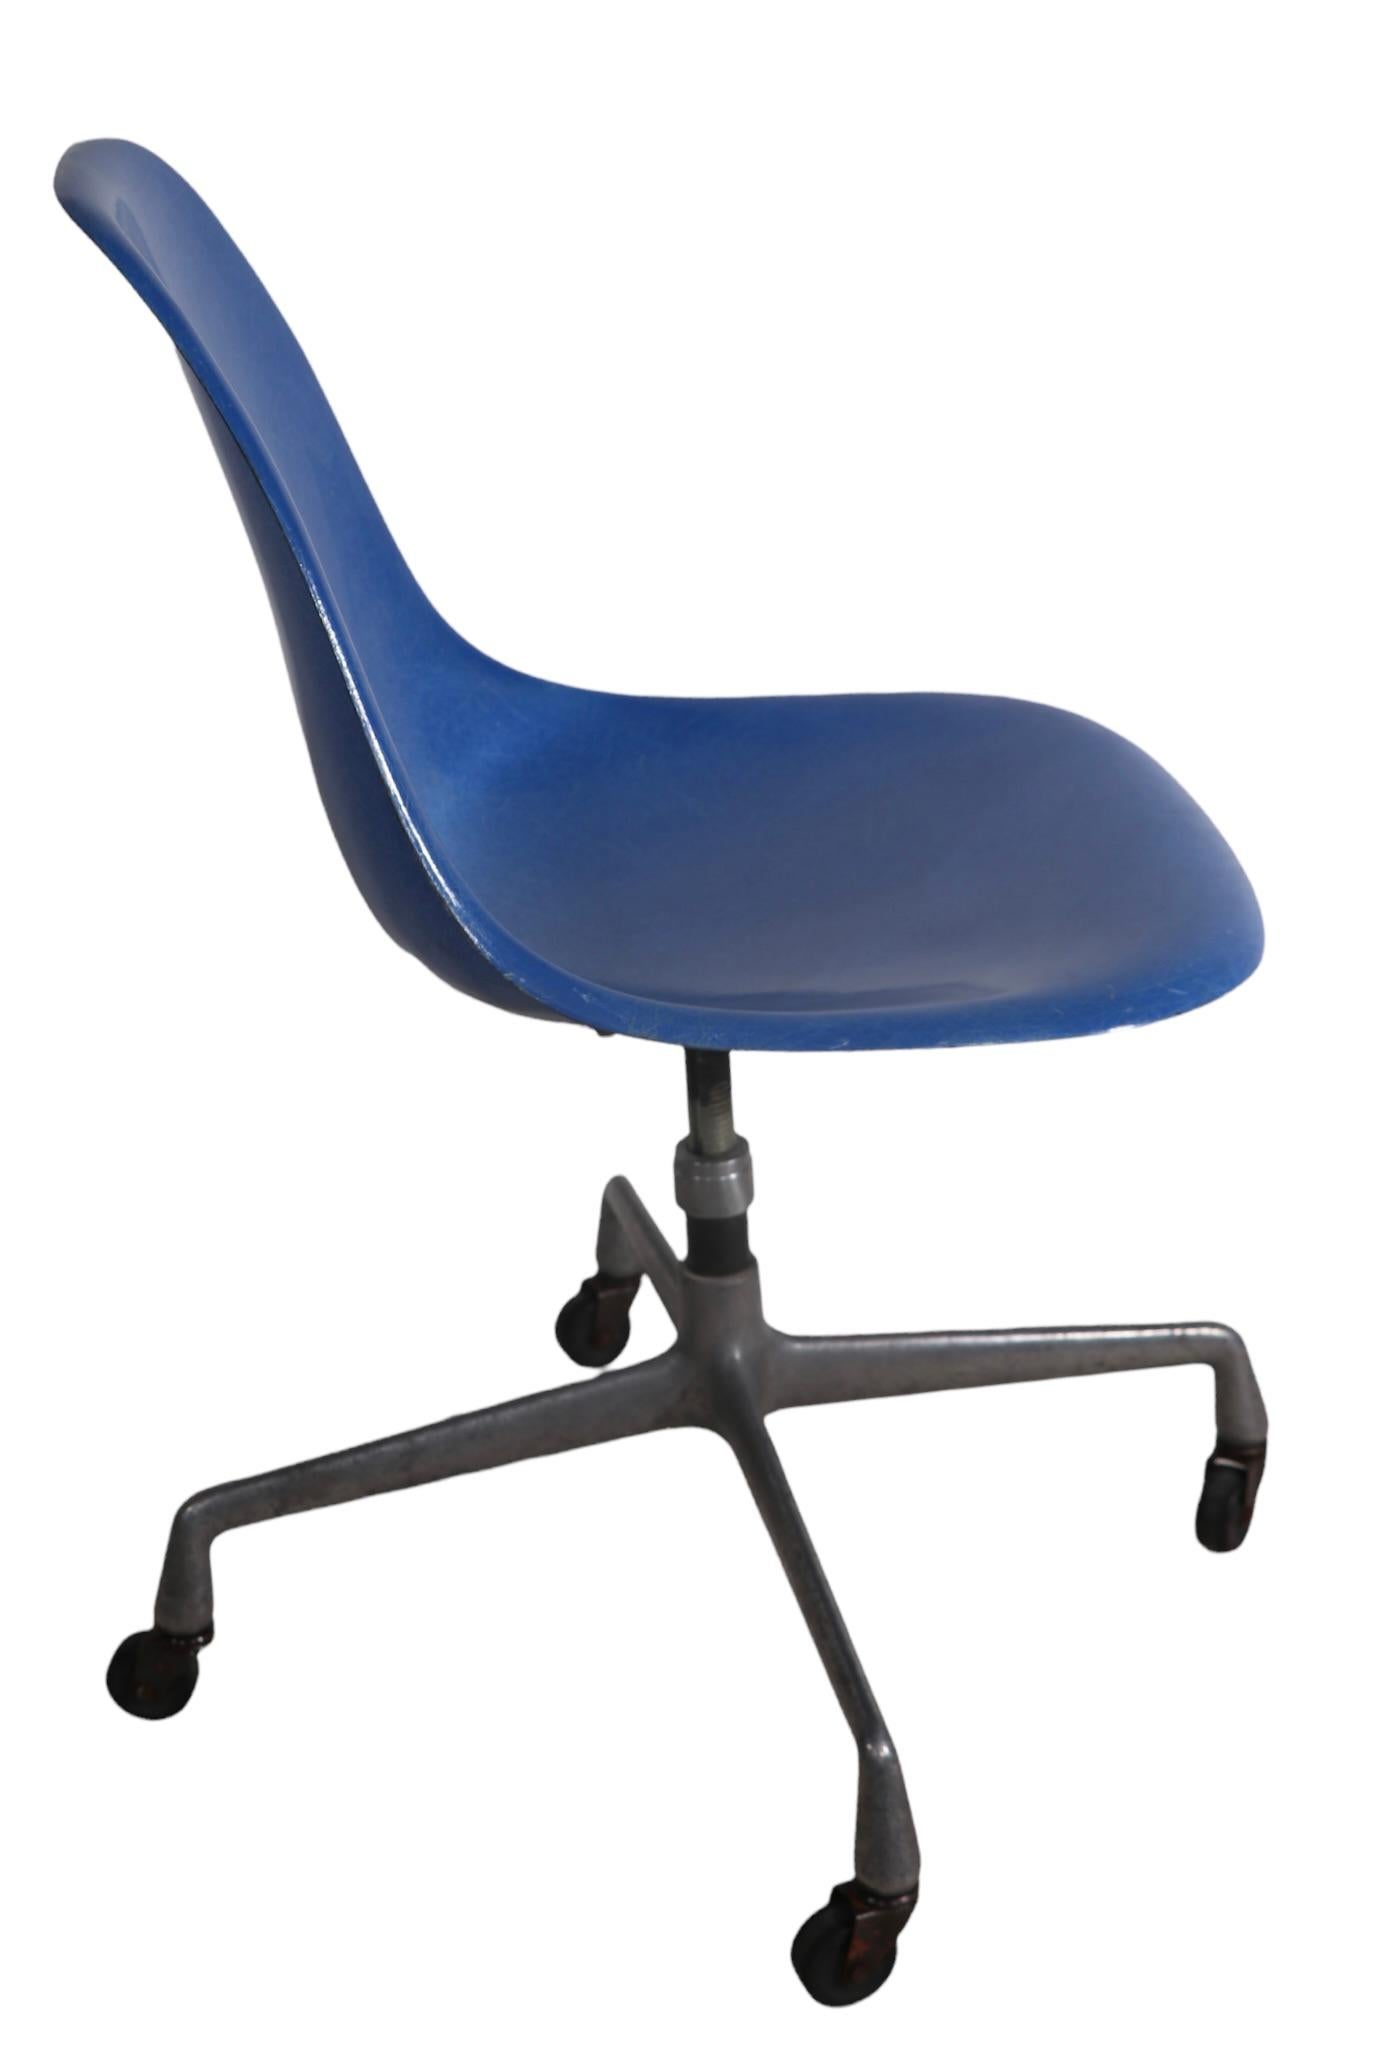 Eames Herman Miller Aluminum Base Swivel Desk Office Chair in Blue Fiberglass For Sale 1